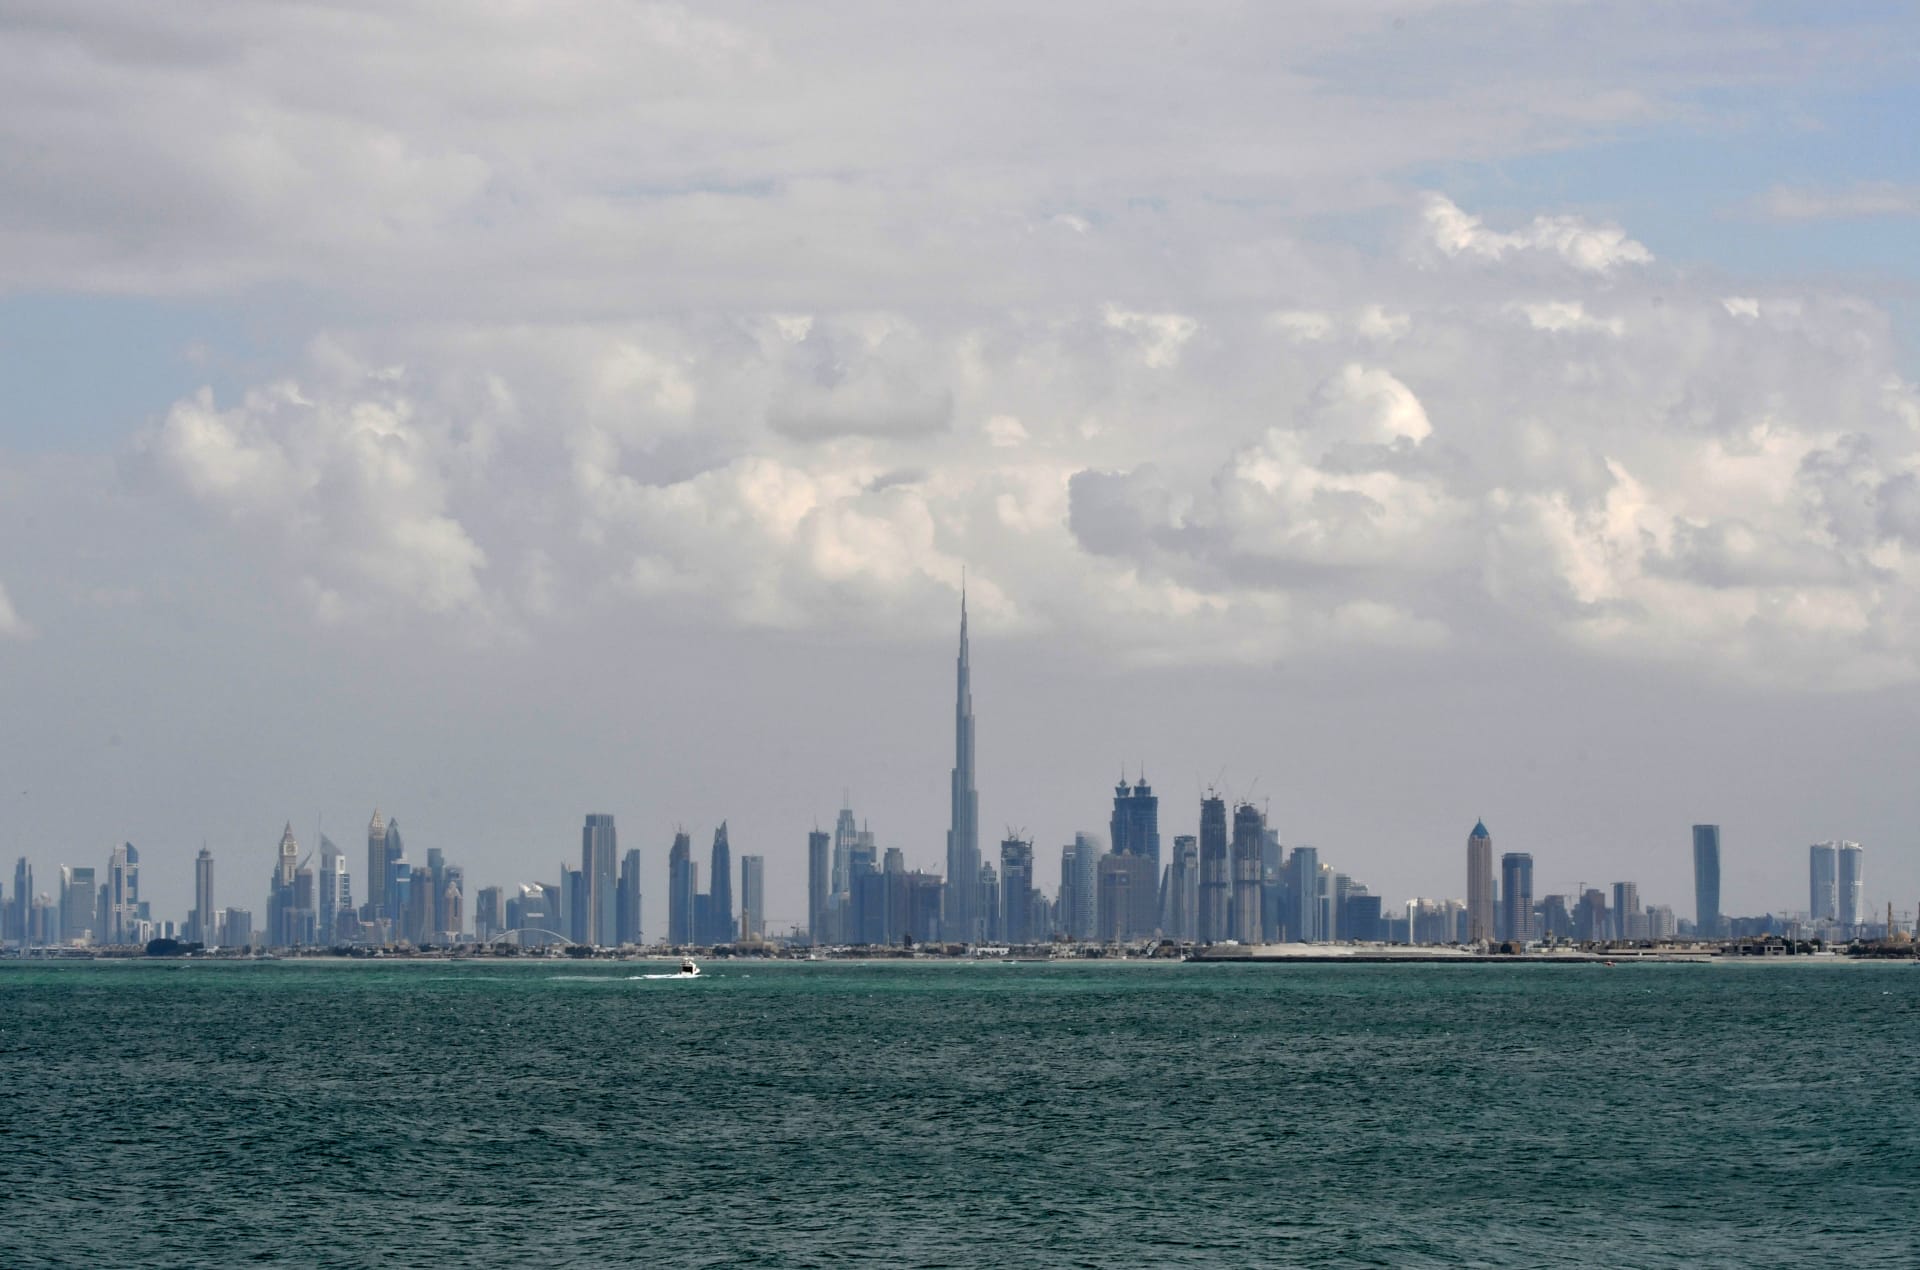 دبي تنفي إصدار تصاريح للمقامرة: شائعات لا أساس لها من الصحة